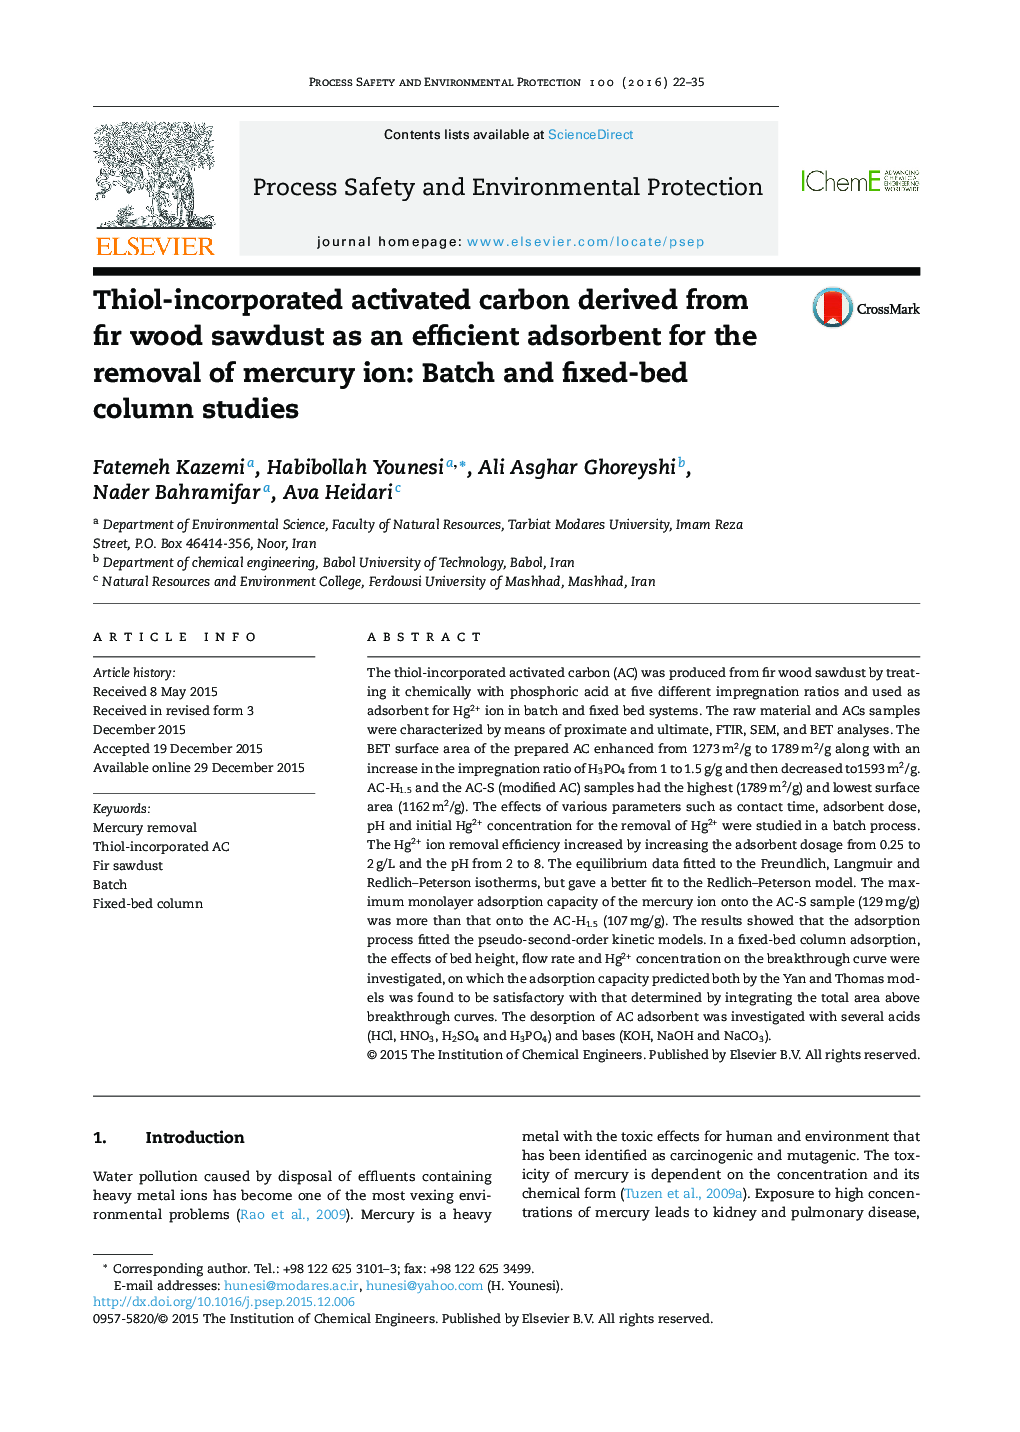 کربن فعال گنجانیده با تیول به عنوان یک جاذب کارآمد برای حذف یون جیوه حاصل از خاک اره چوب صنوبر: مطالعات ستون دسته ای و بستر ثابت 